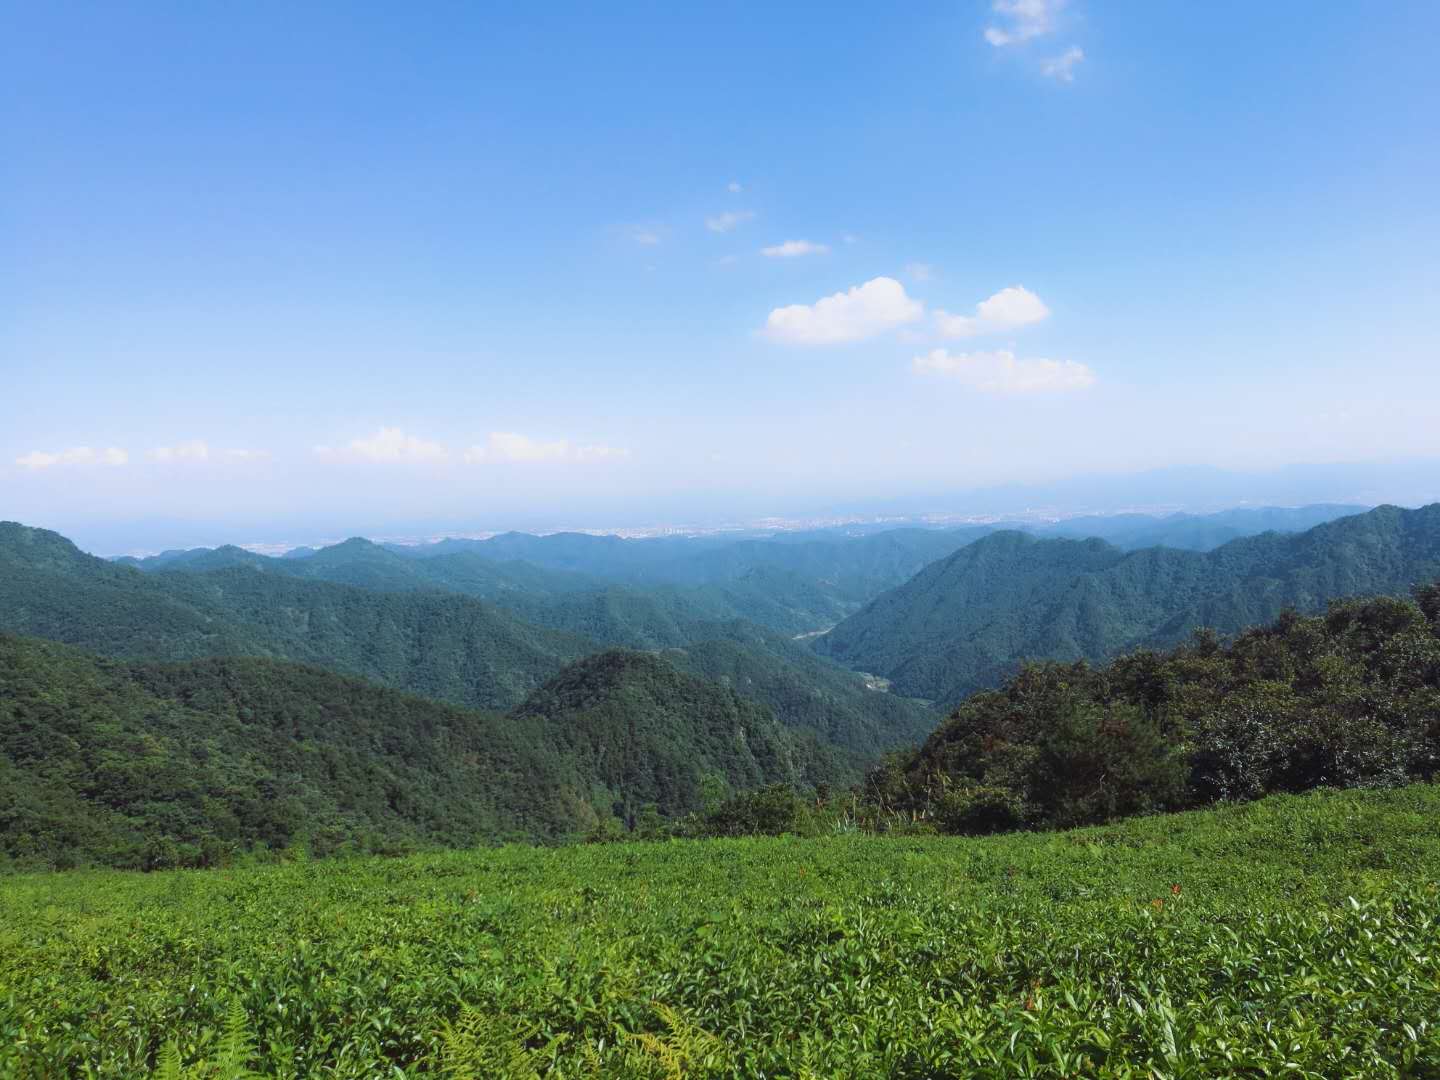 大寒山森林绿茶有机茶绿茶高山有机茶义乌国际森林博览会参展产品详情图5